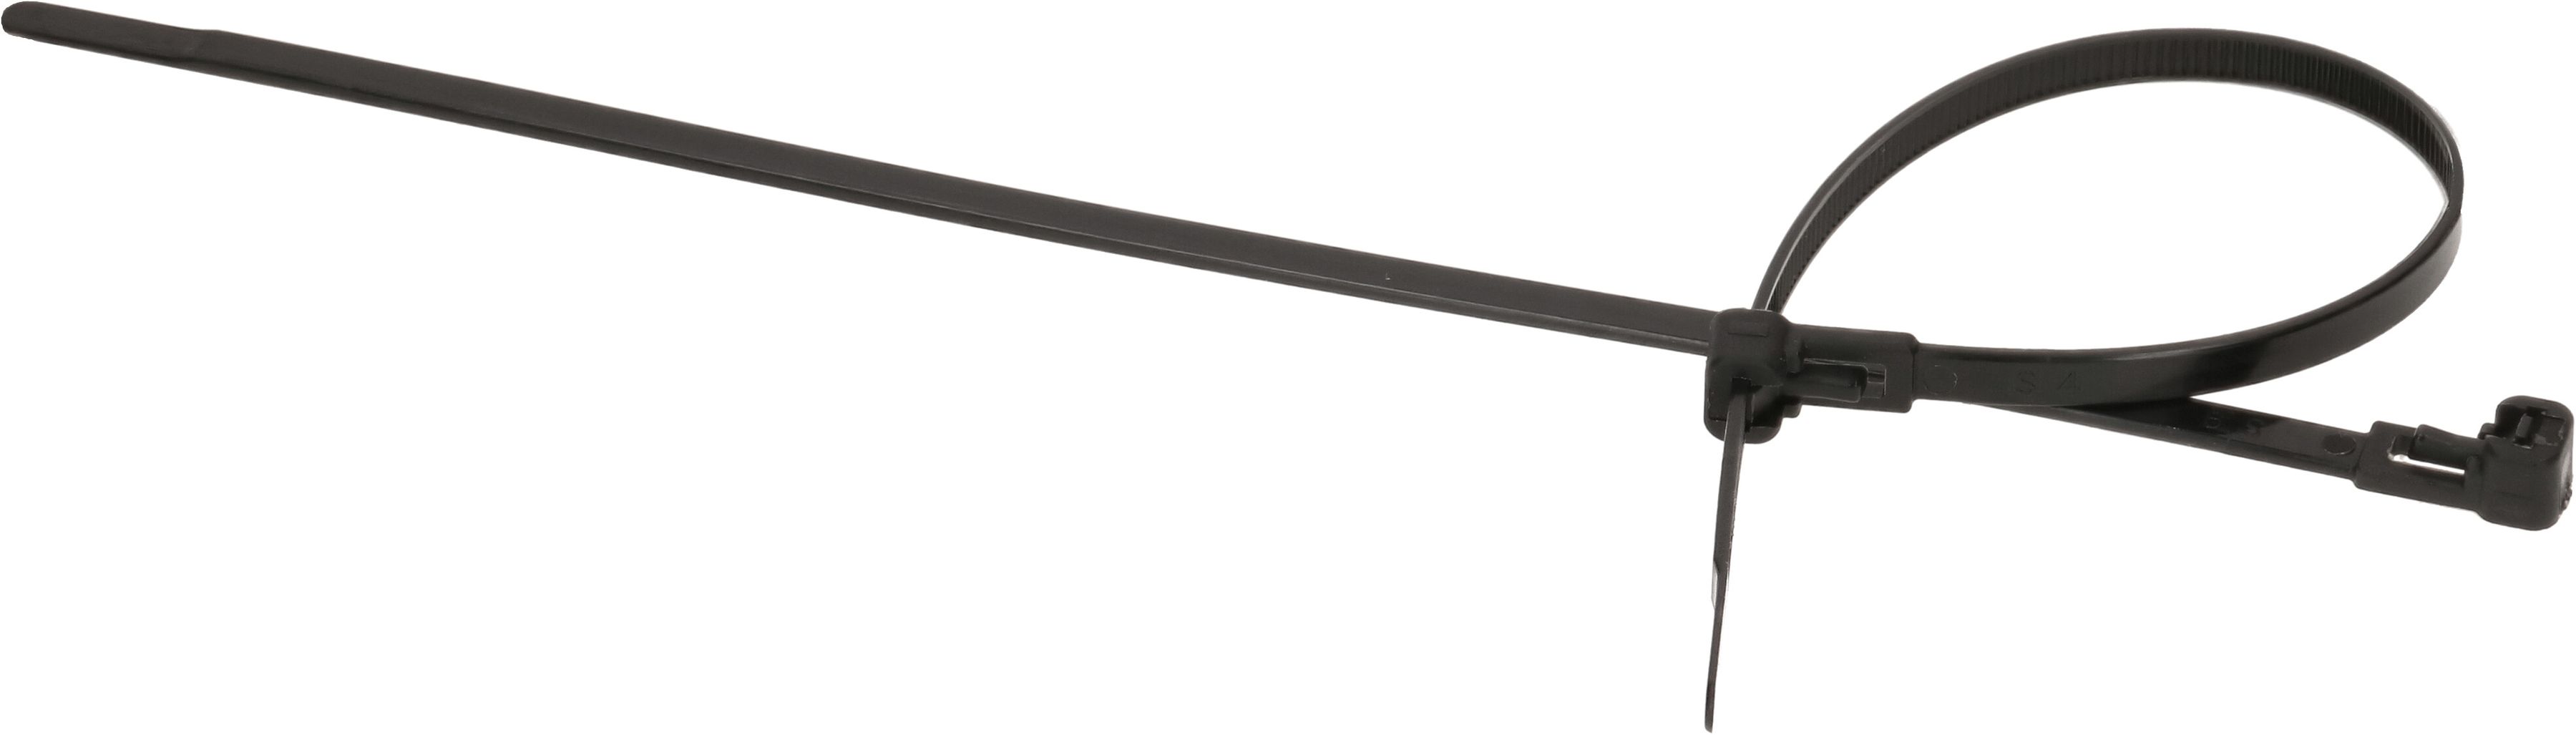 Kabelbinder wiederlösbar 4.6x200mm schwarz / 50 Stück